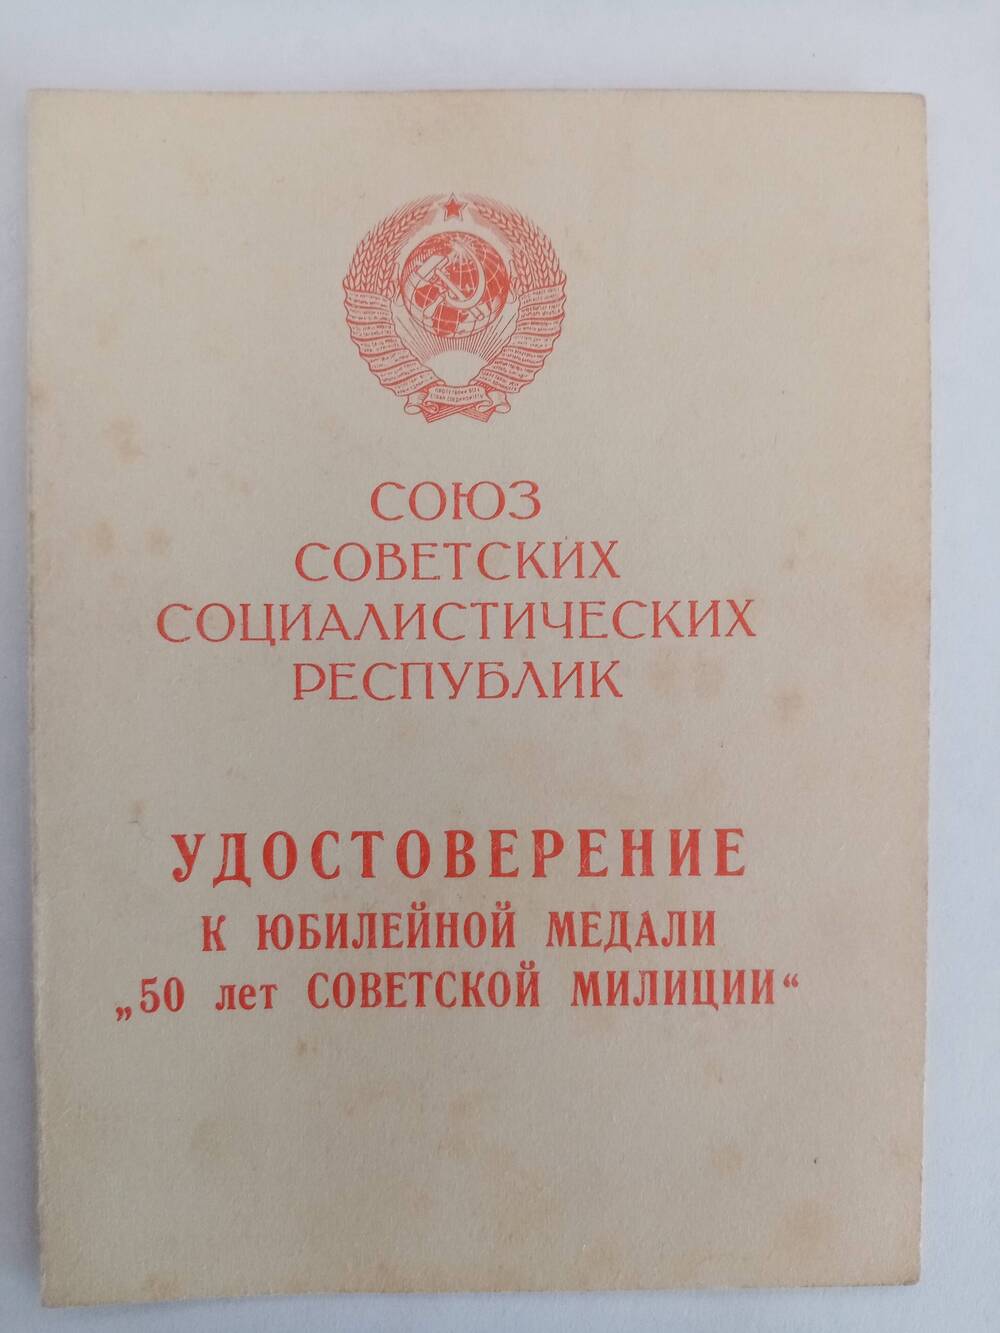 Удостоверение к юбилейной медали 50 лет Советской милиции.